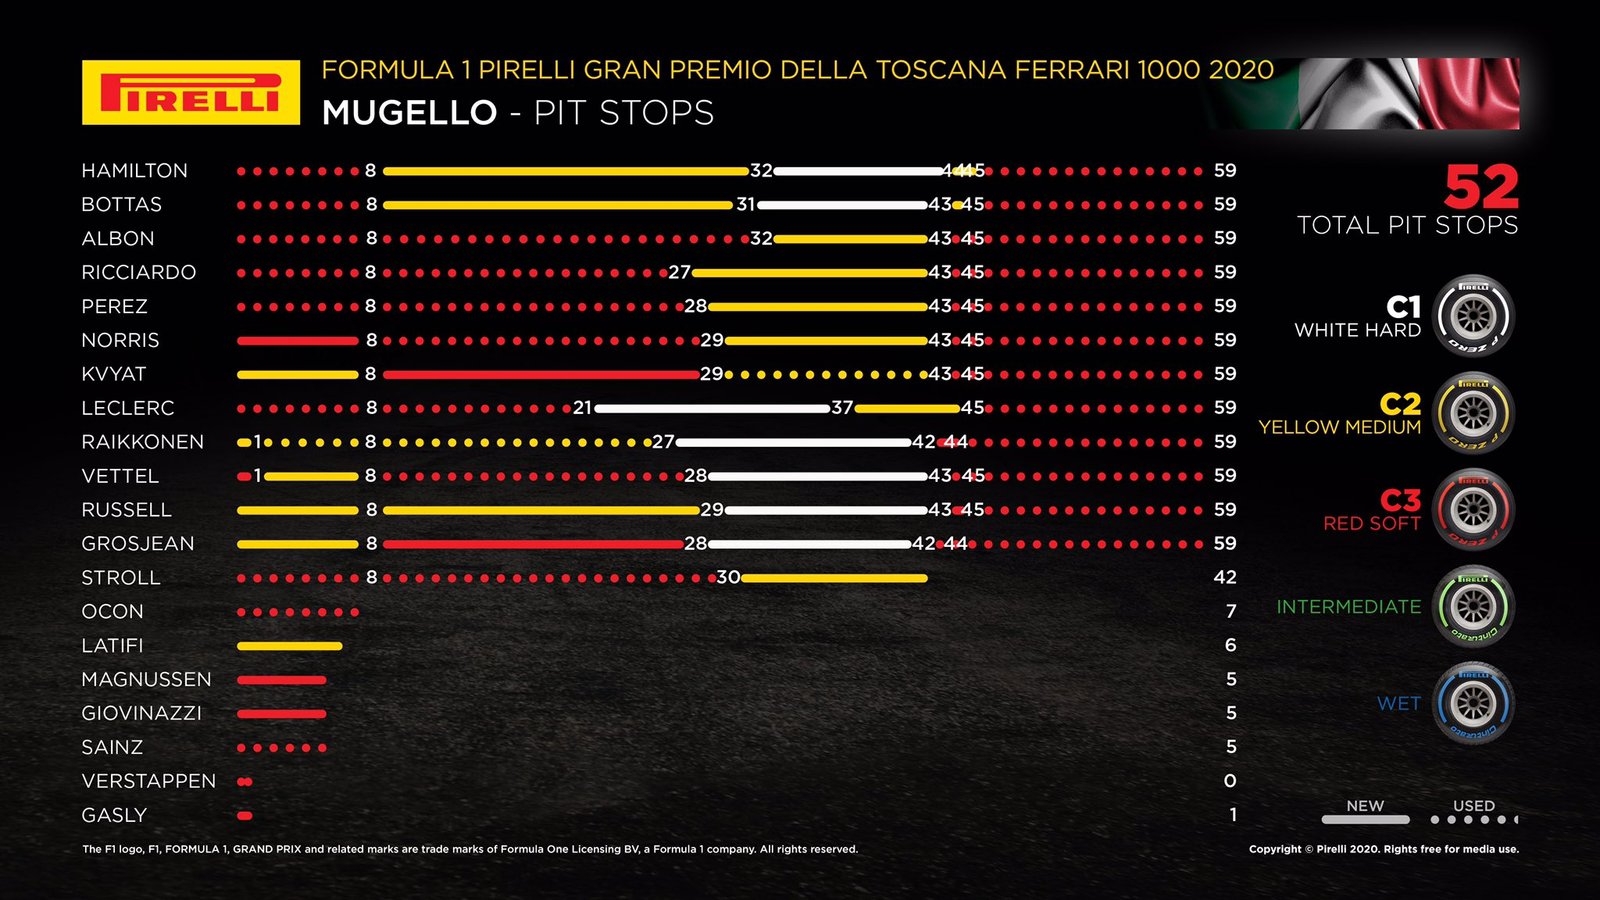 As estratégias de cada piloto no GP da Toscana - Foto: Pirelli Motorsport